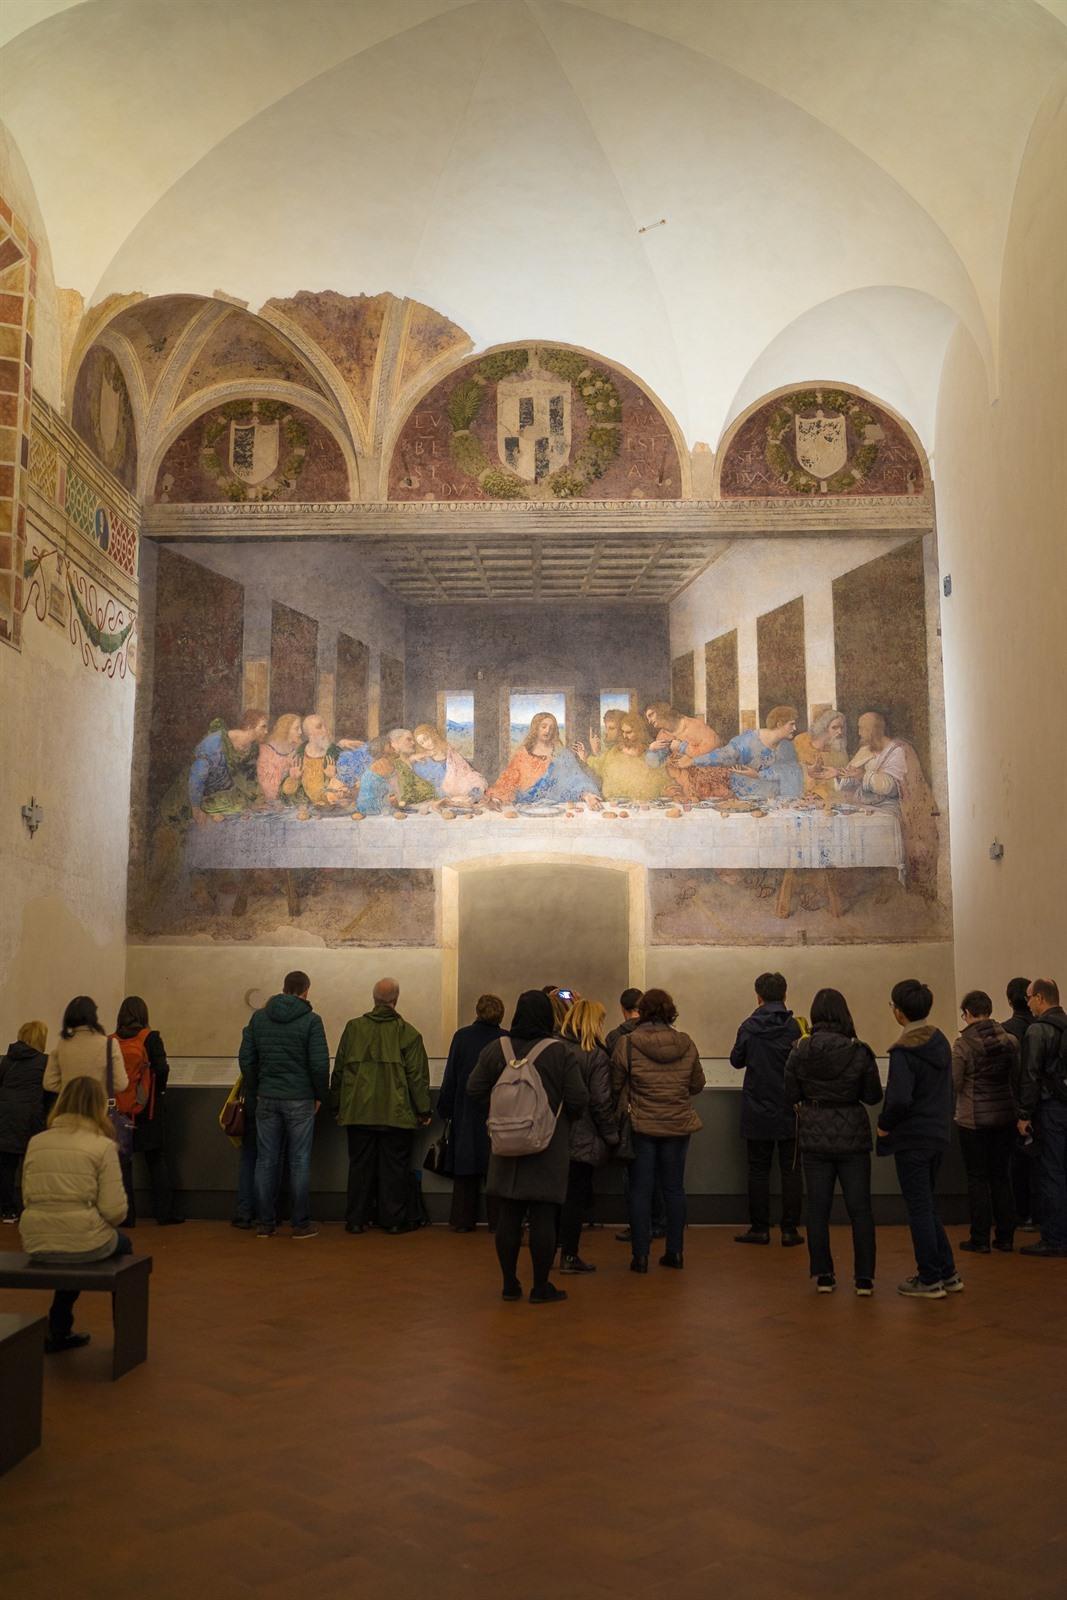 Avondmaal van Vinci in Milaan: Tips & tickets